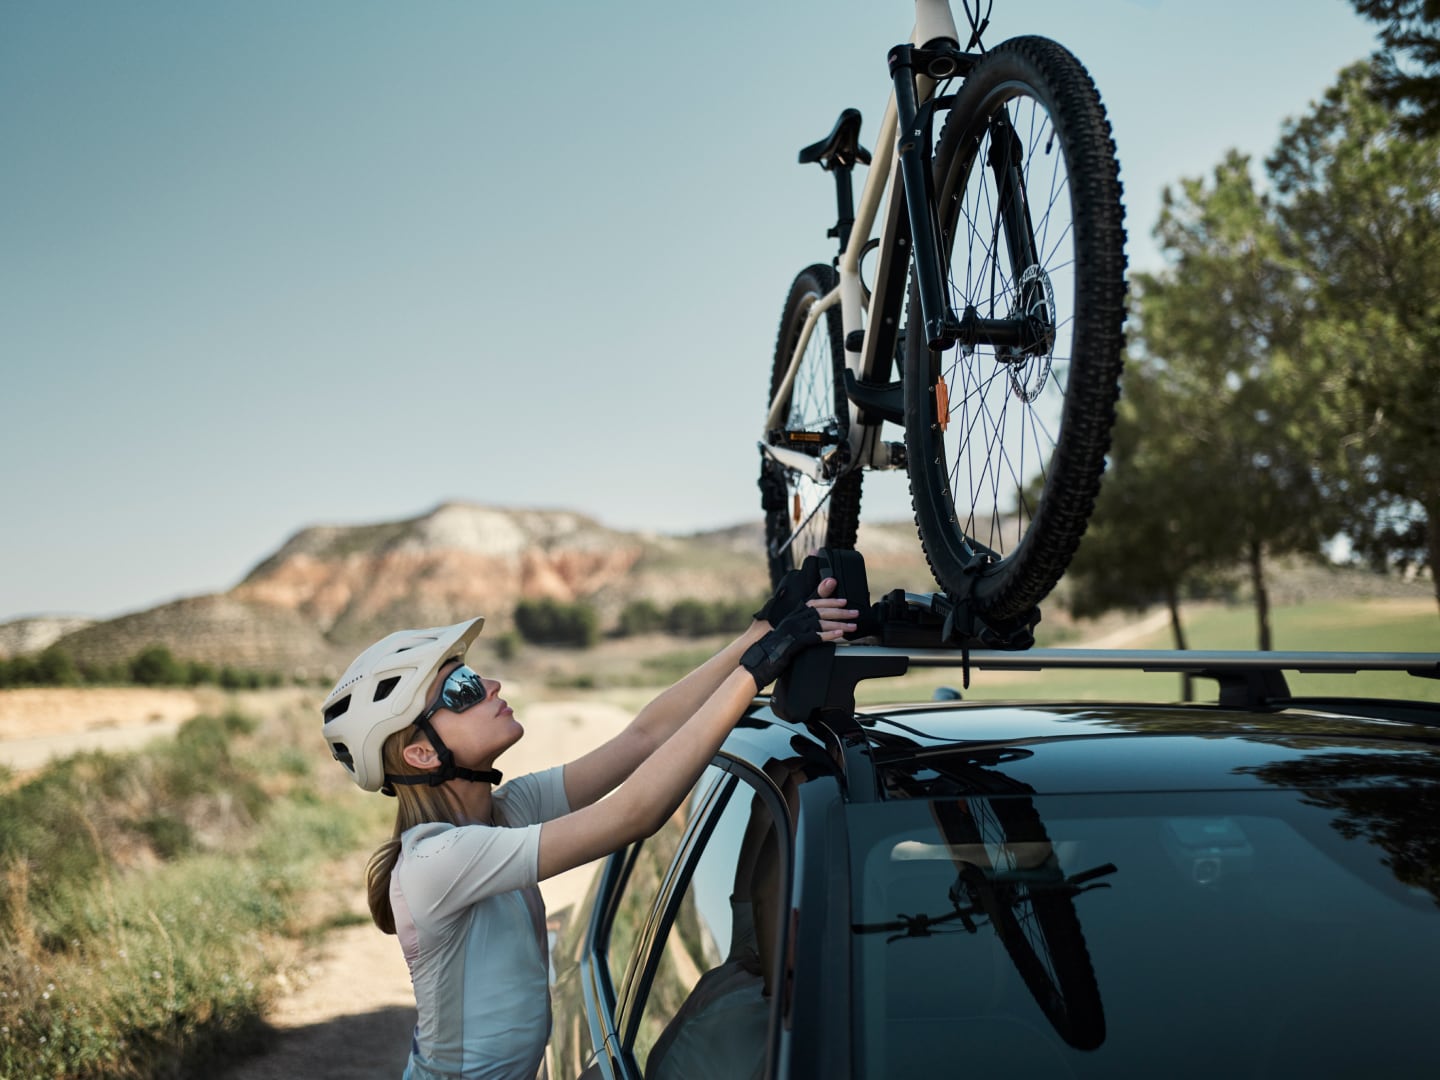 Eine Frau passt die Position eines an einem Volvo angebrachten Fahrrads an.